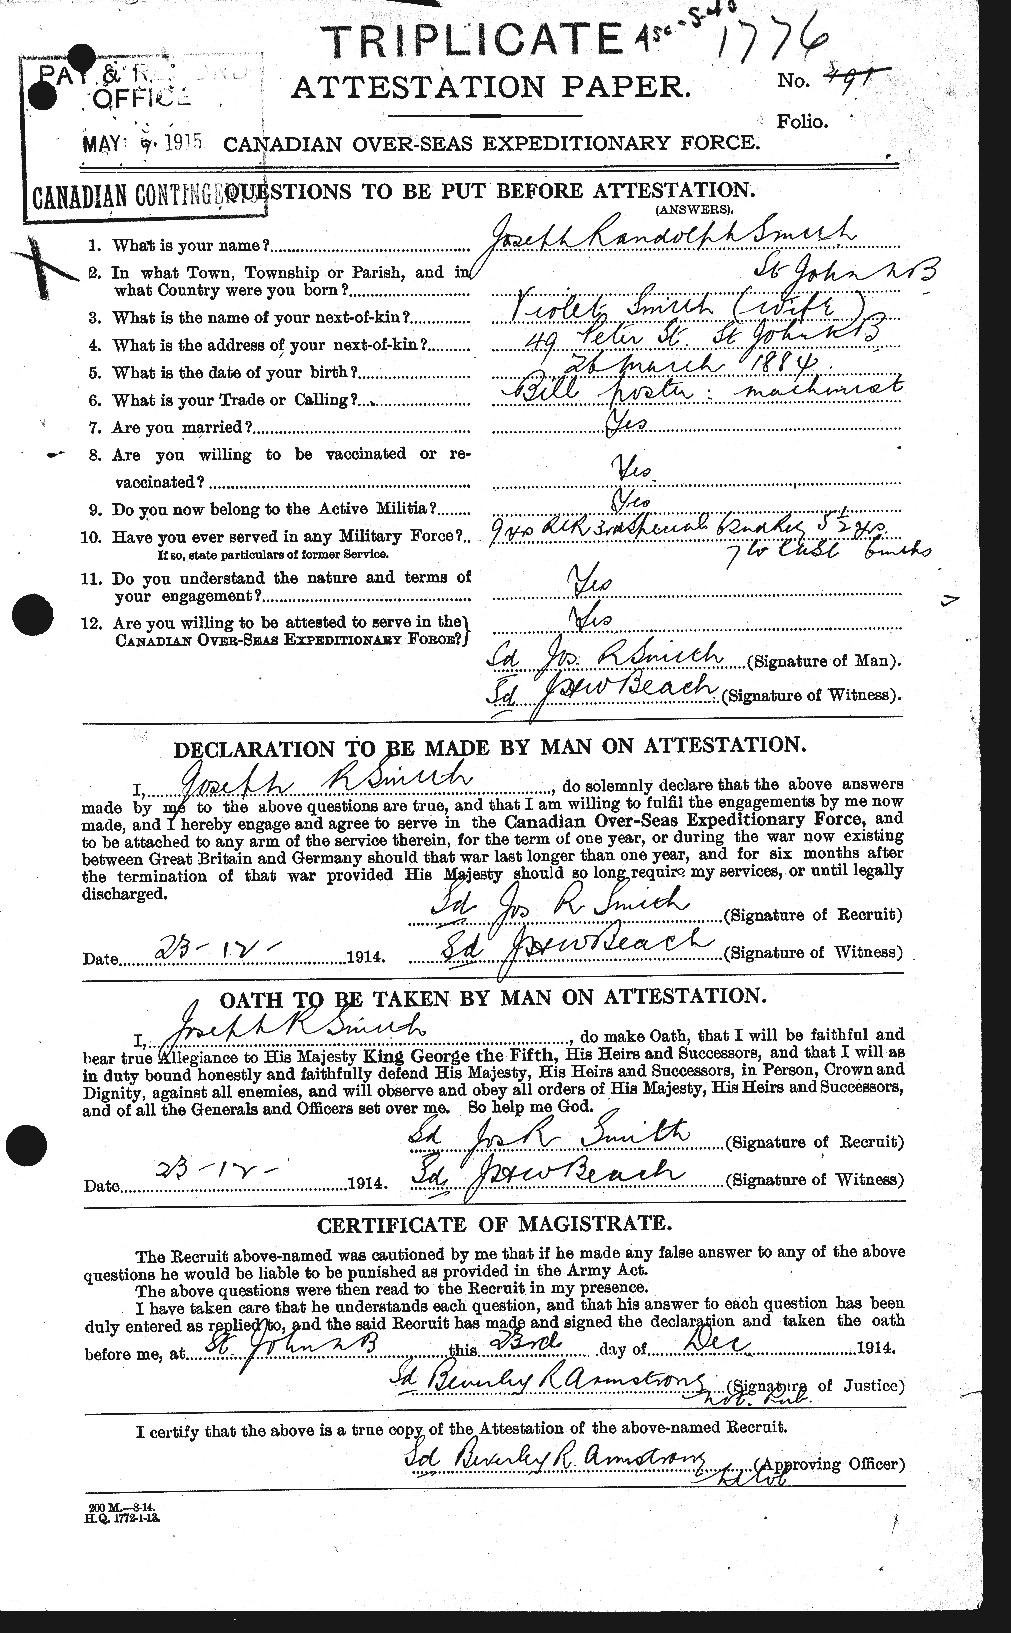 Dossiers du Personnel de la Première Guerre mondiale - CEC 107636a